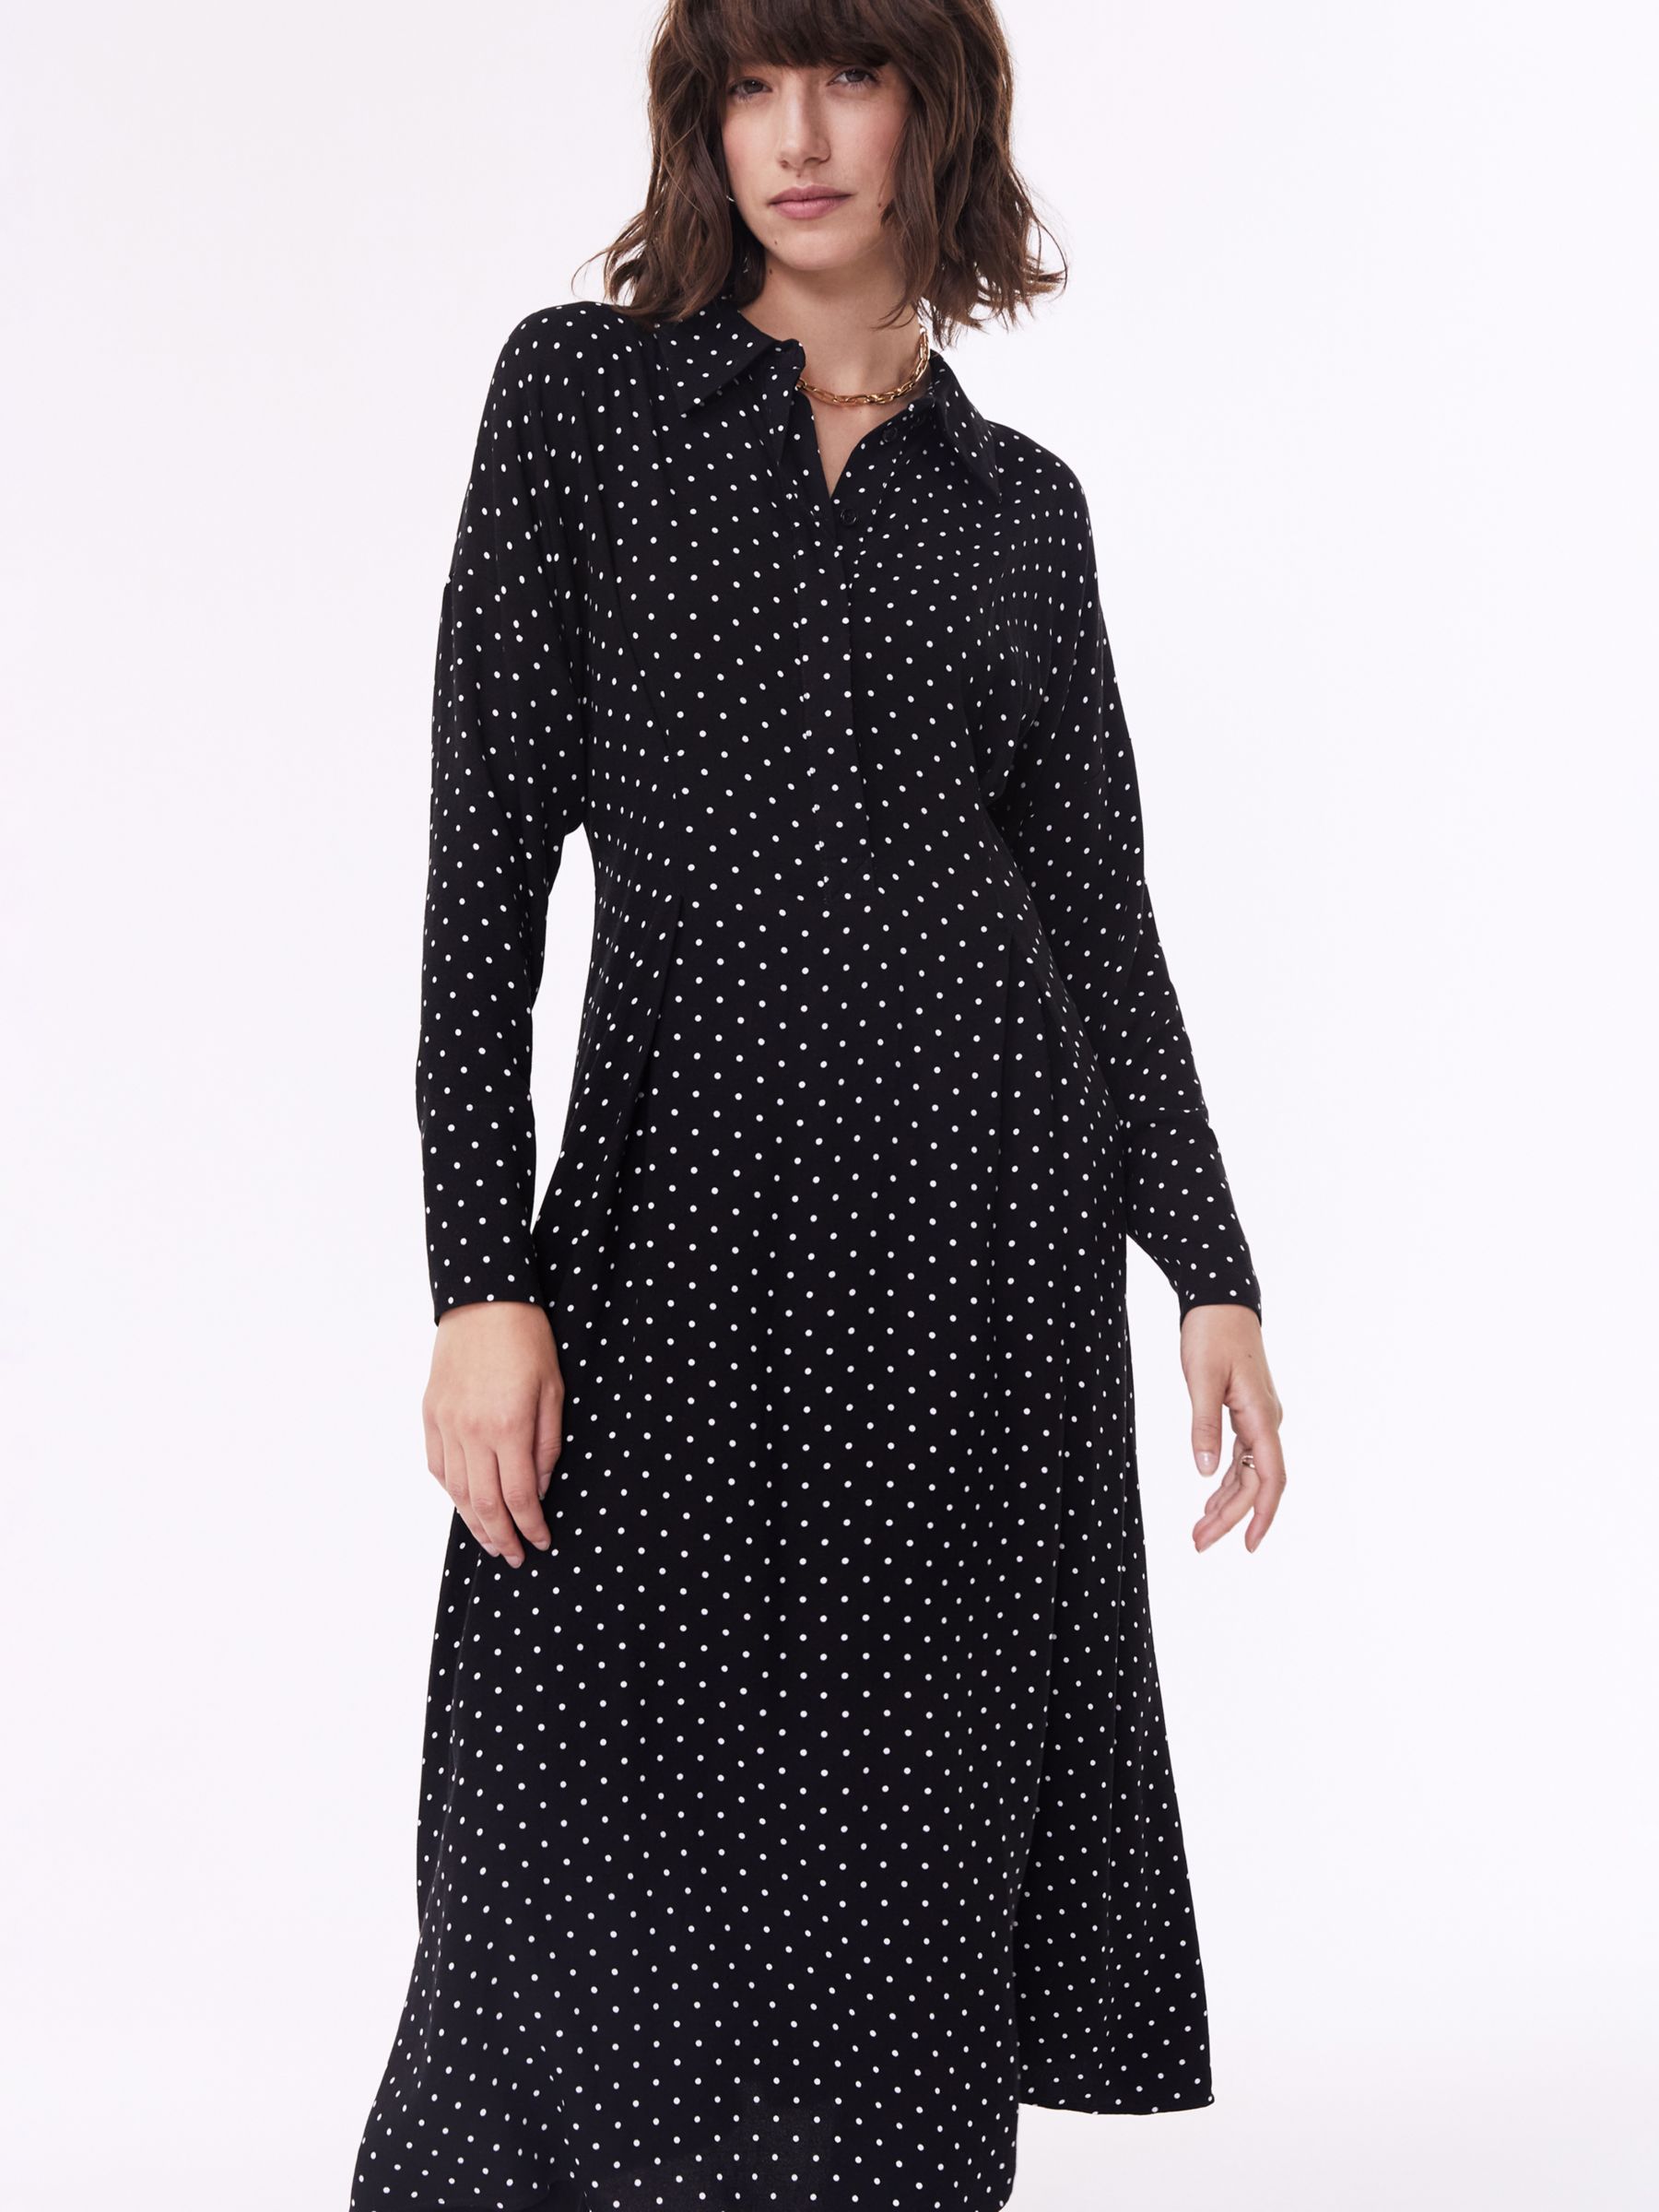 Baukjen Becky Polka Dot Midi Dress, Black/White at John Lewis & Partners